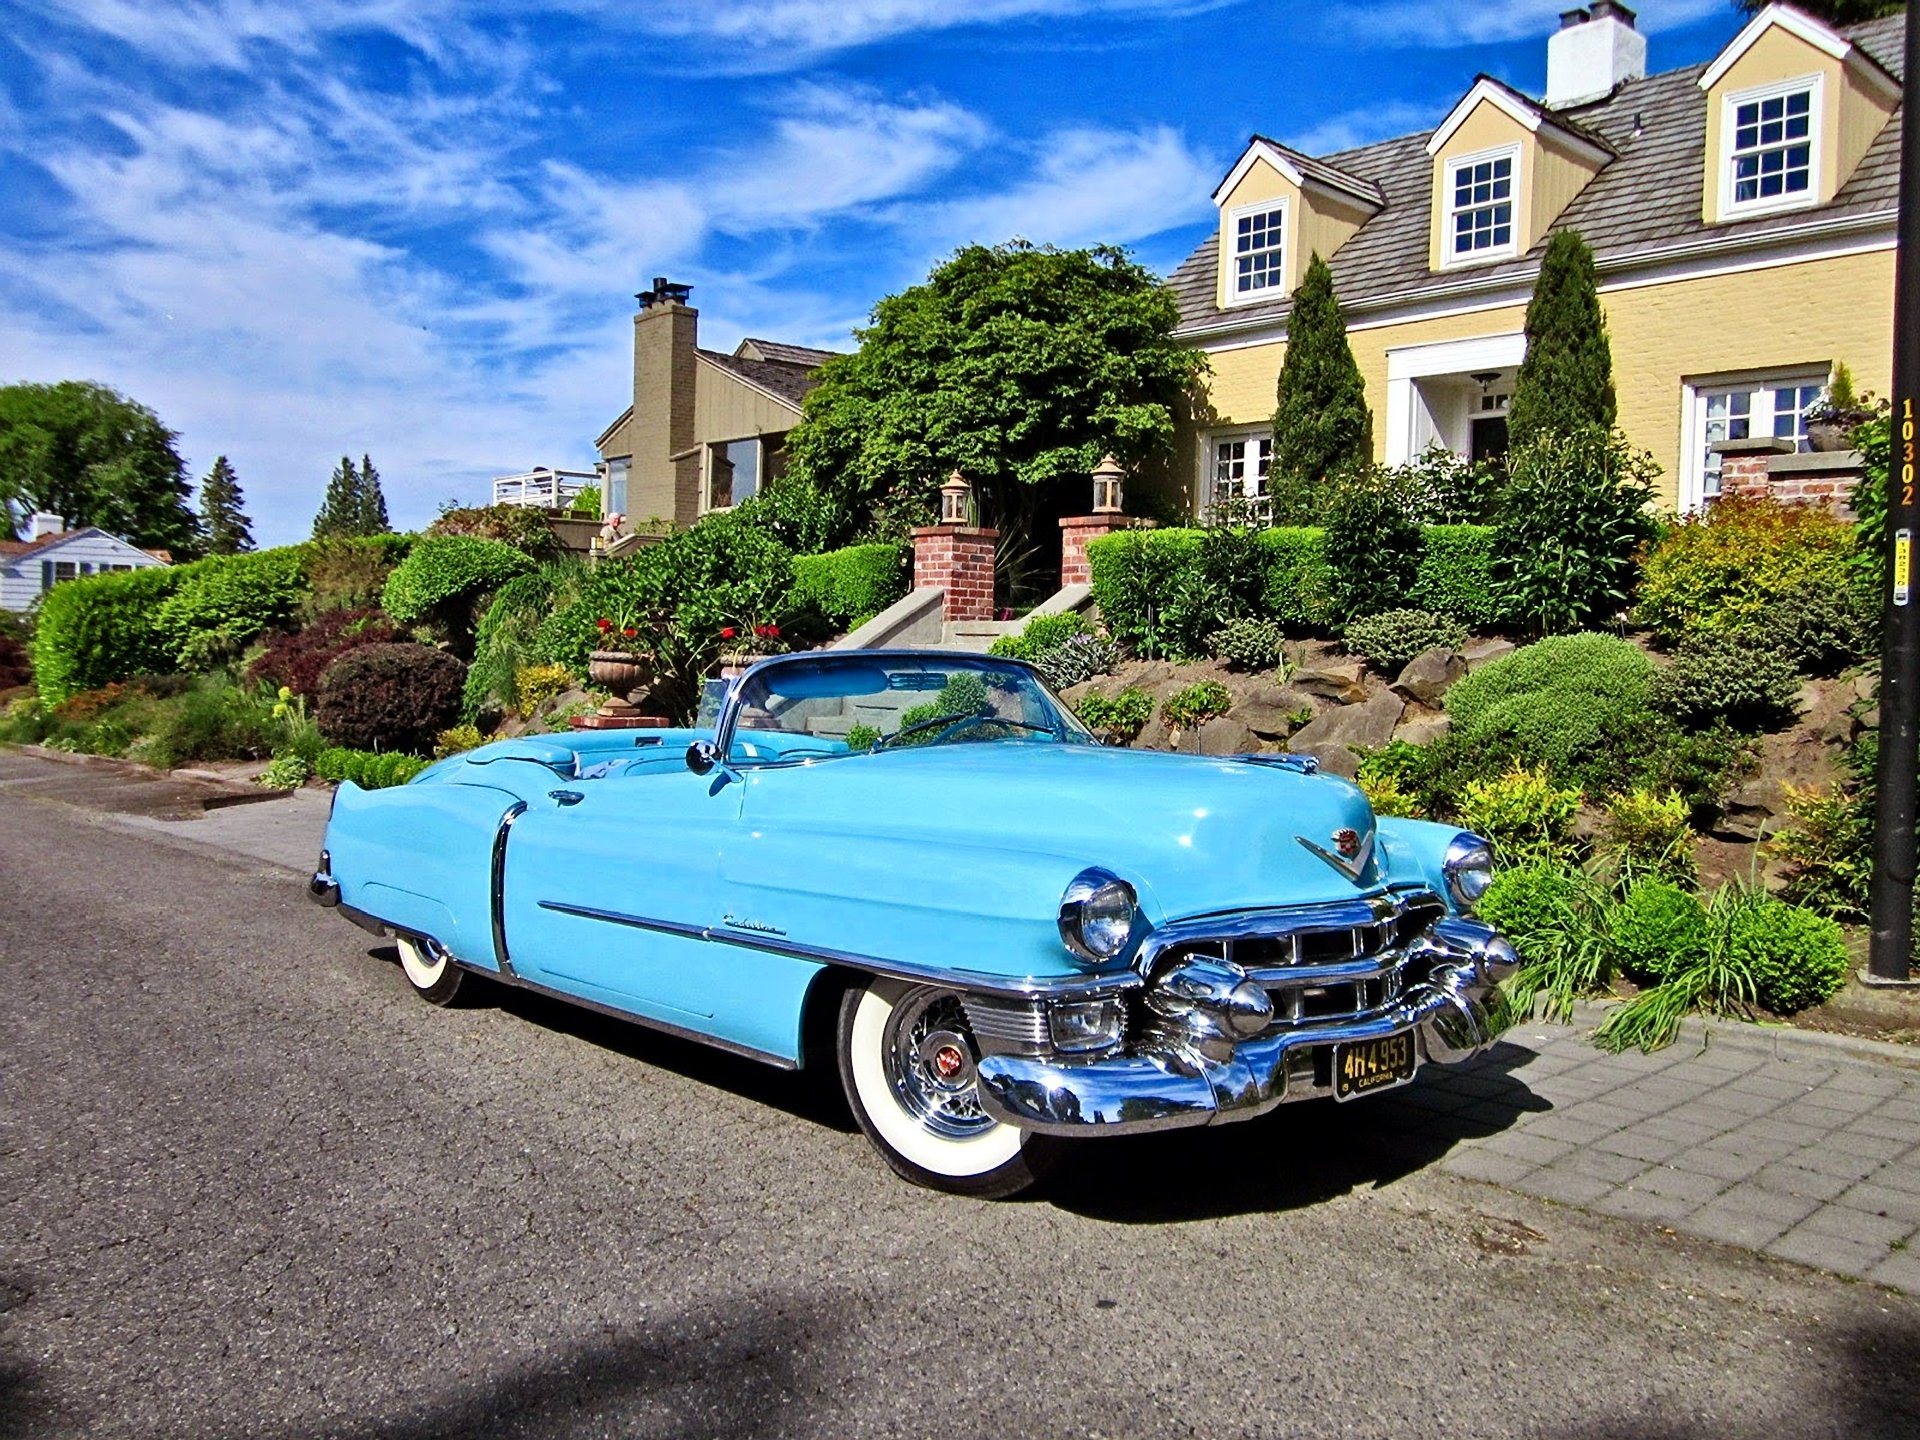 1953 Cadillac Eldorado Convertible Blue Classic Old Vintage